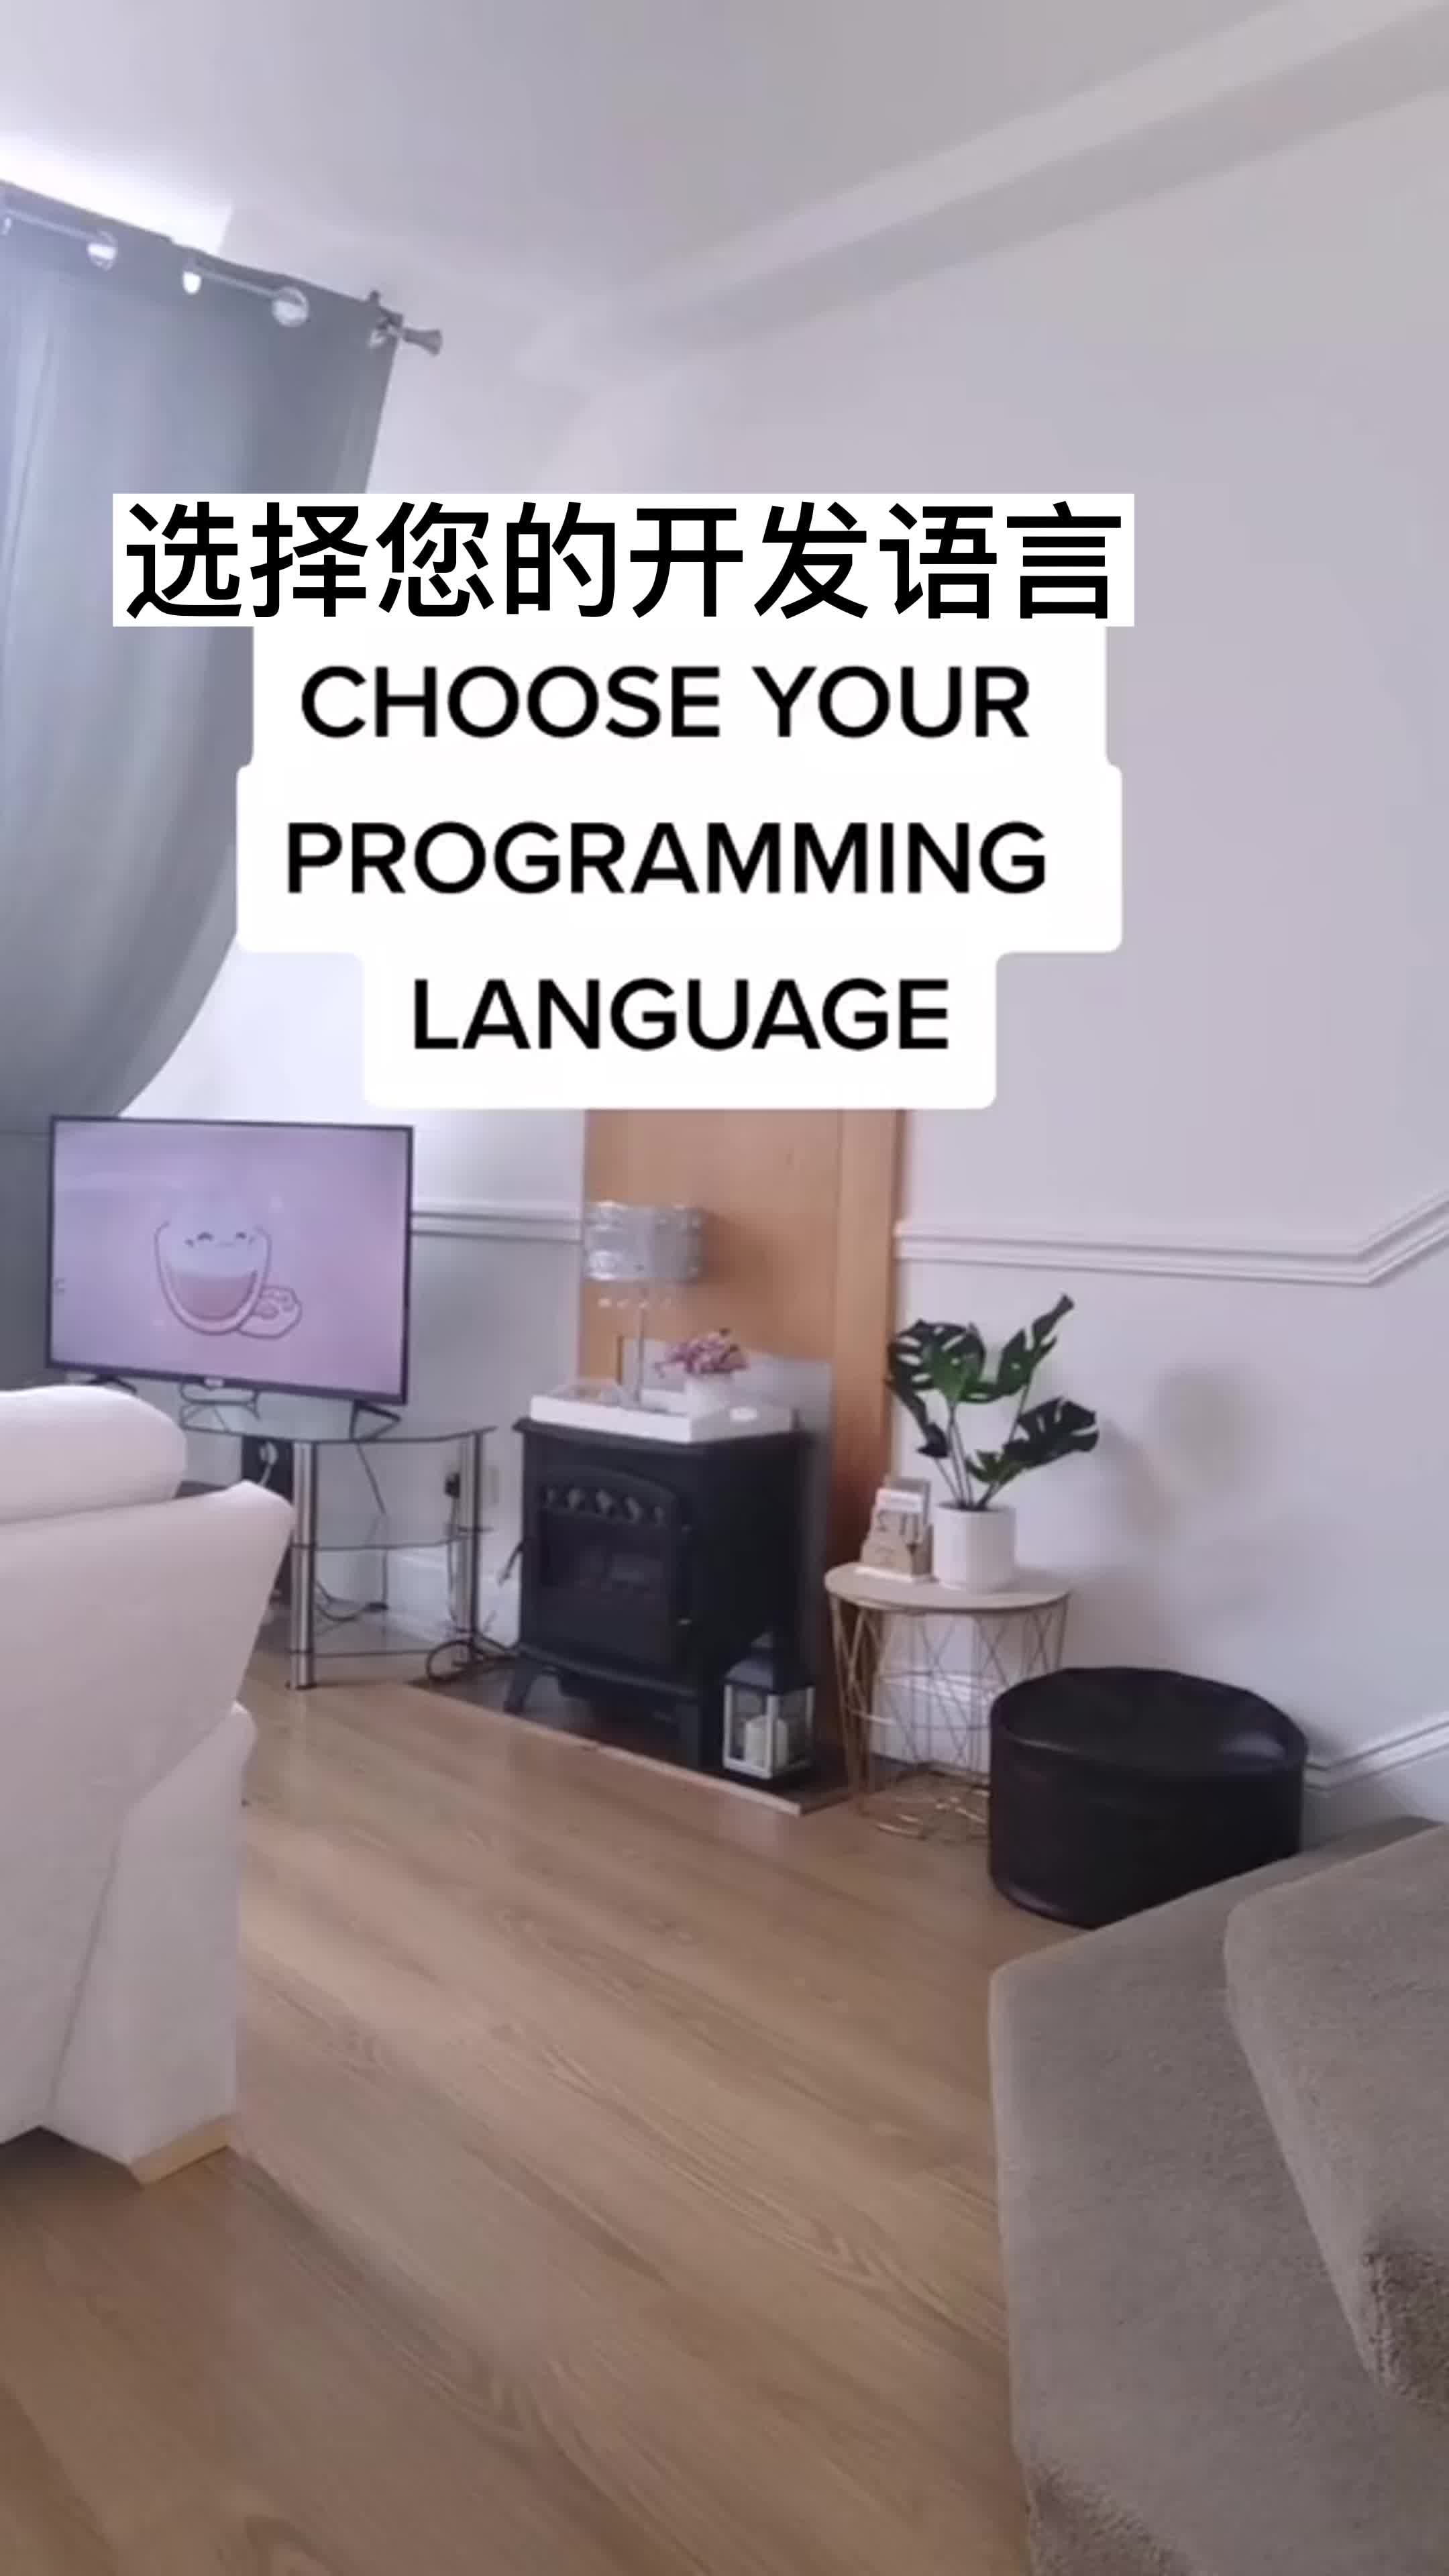 请选择您的开发语言